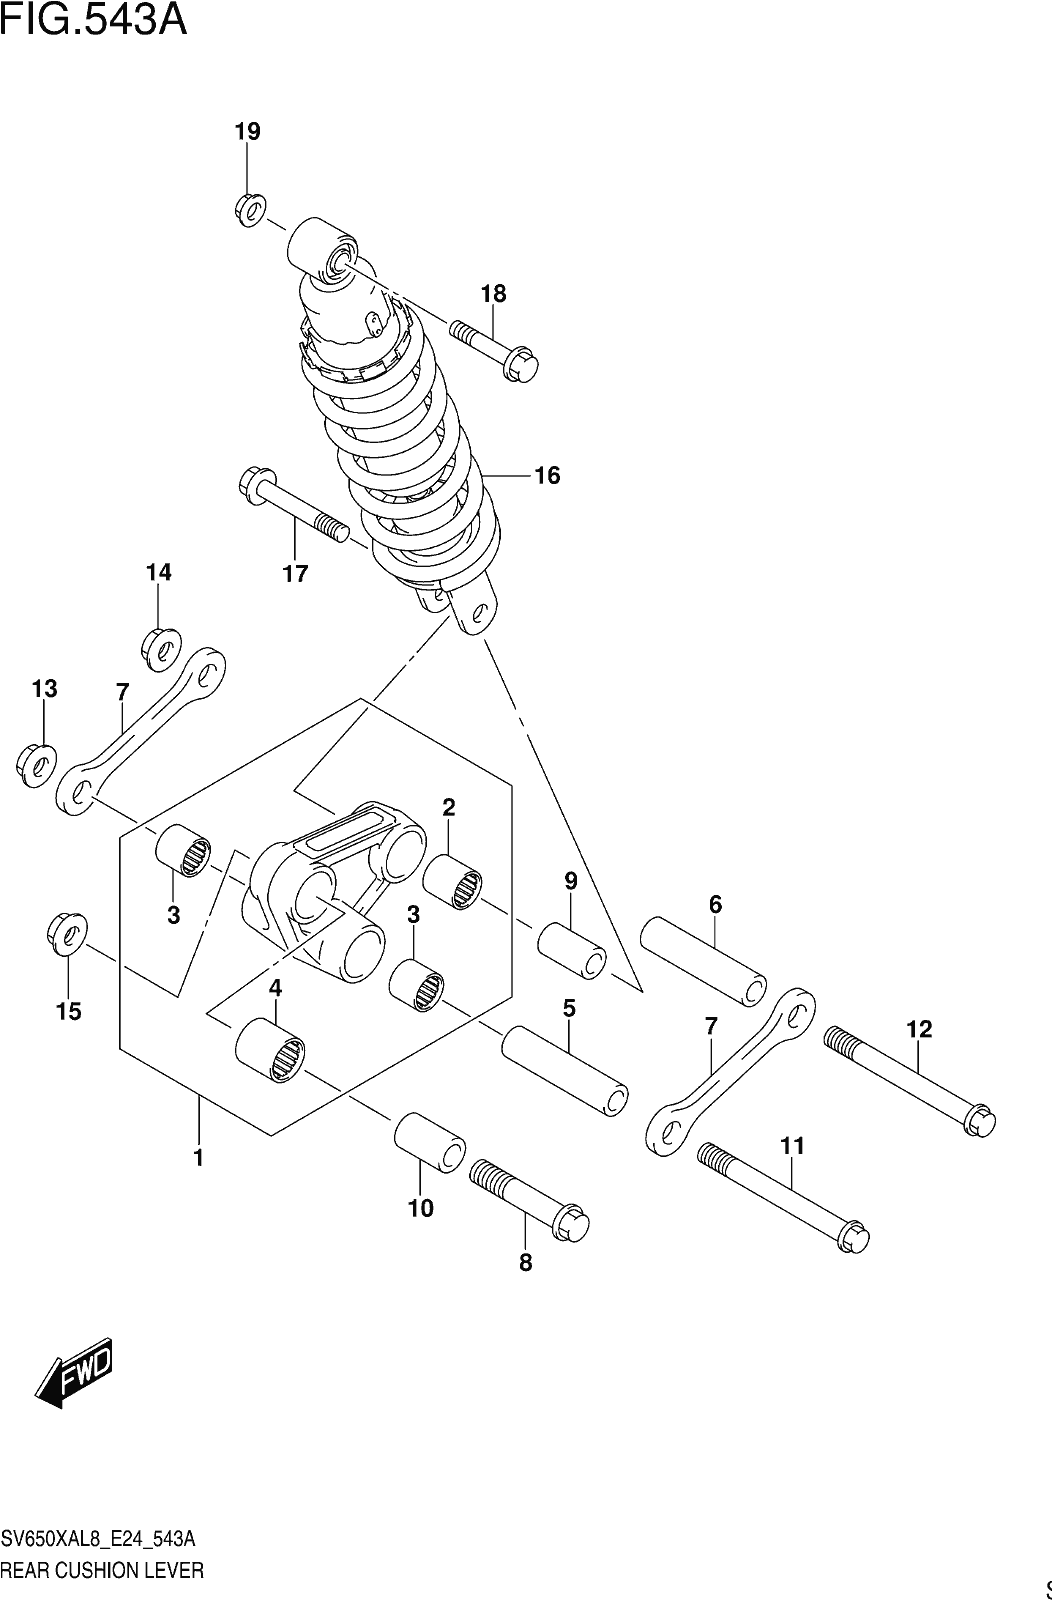 Fig.543a Rear Cushion Lever